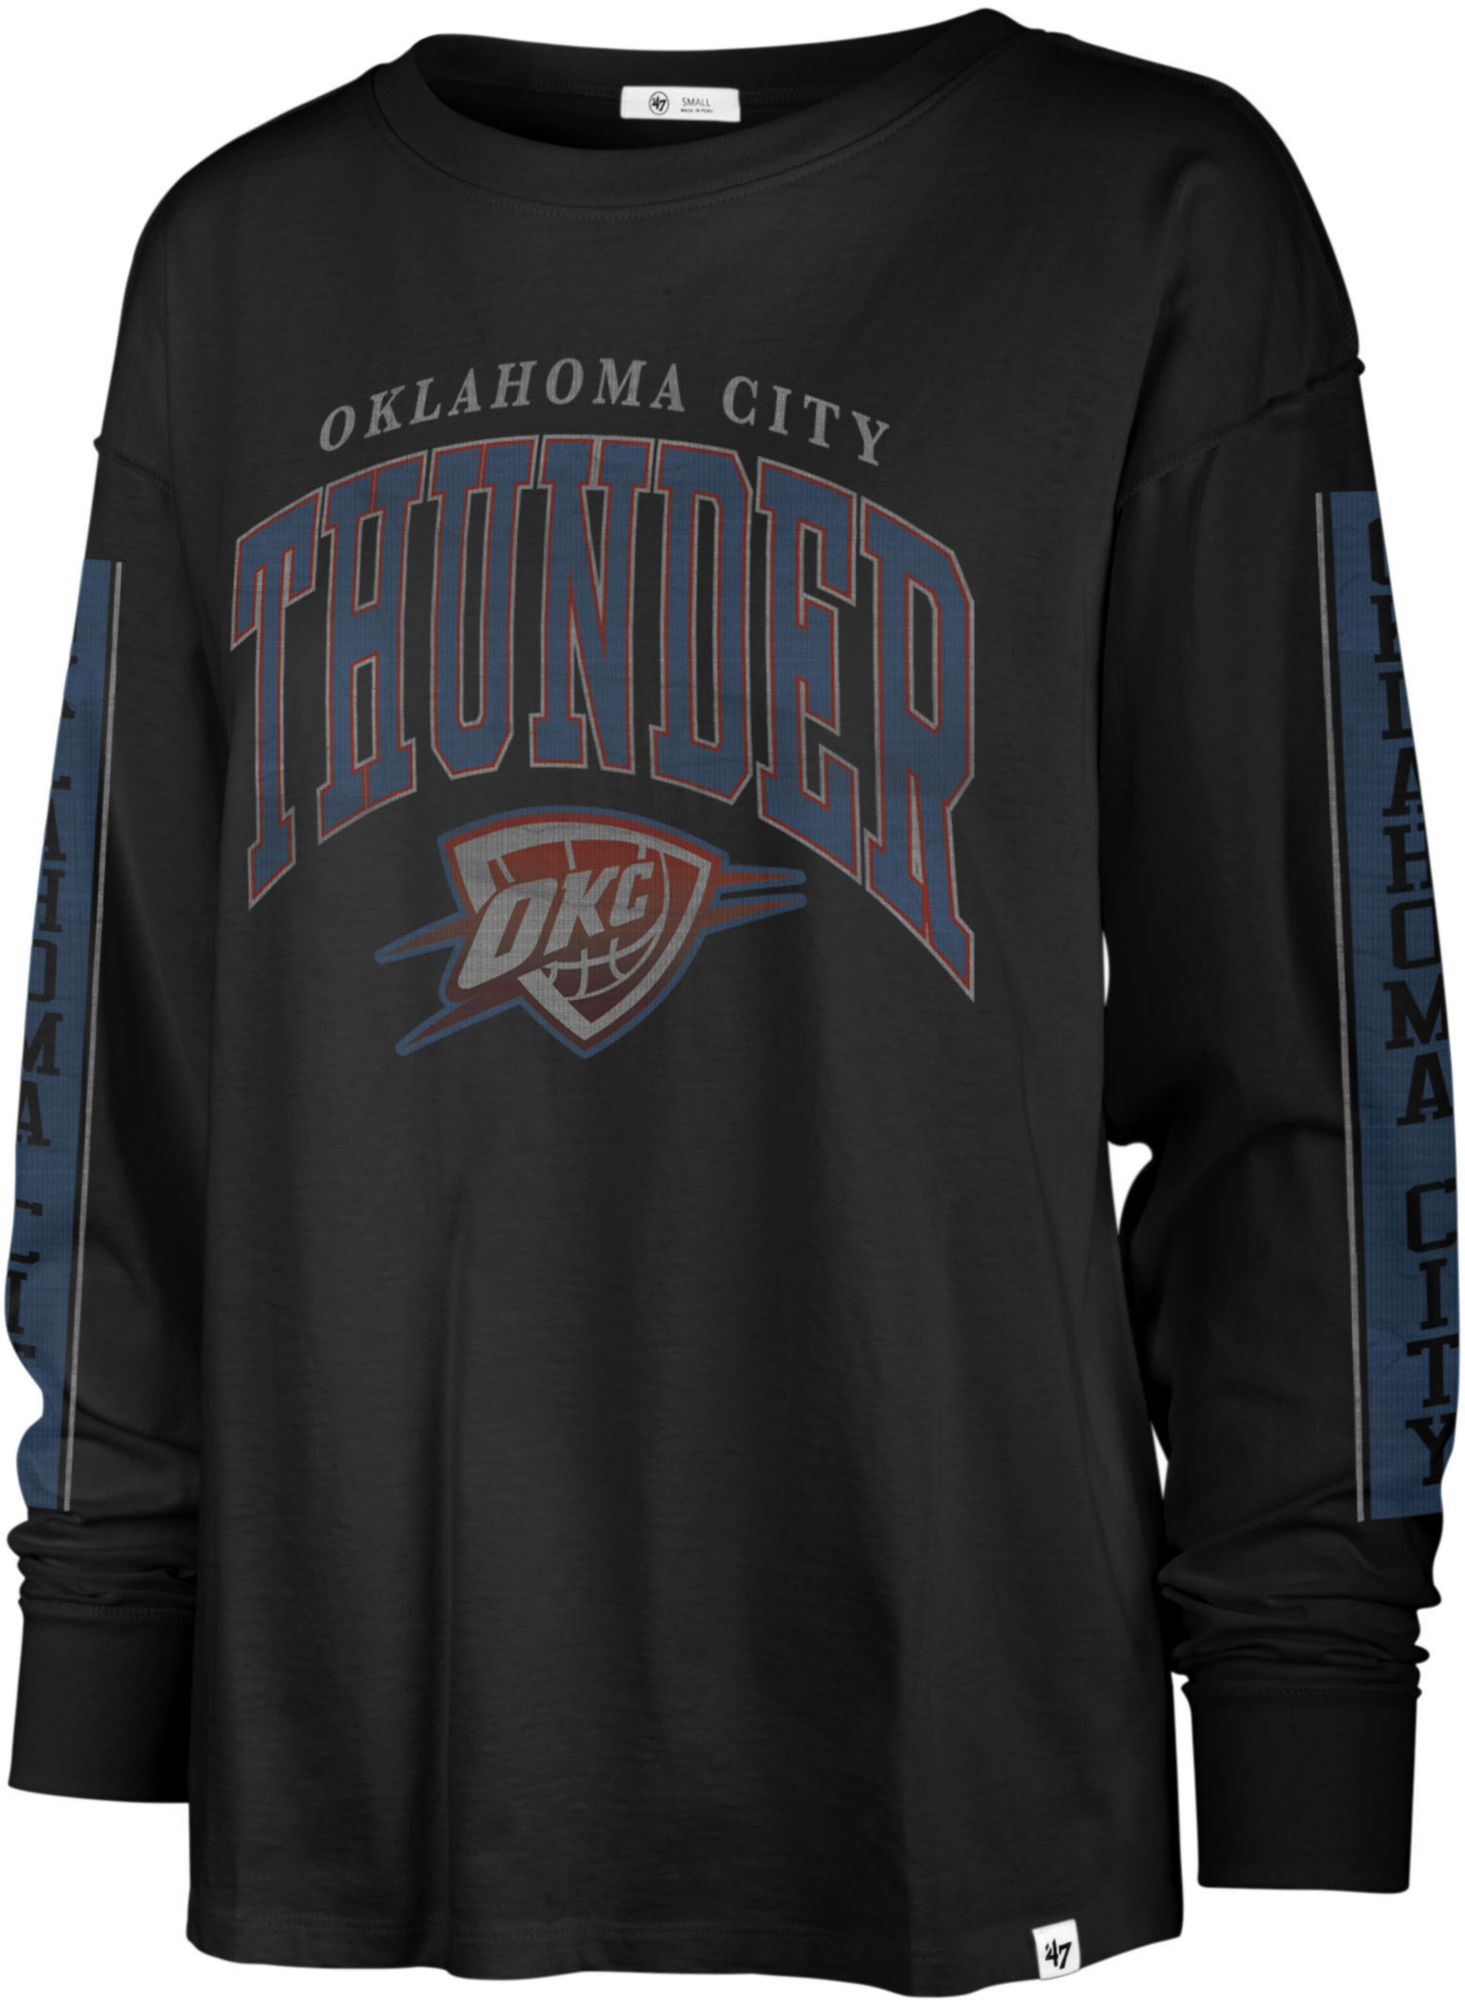 Oklahoma City Thunder black jersey